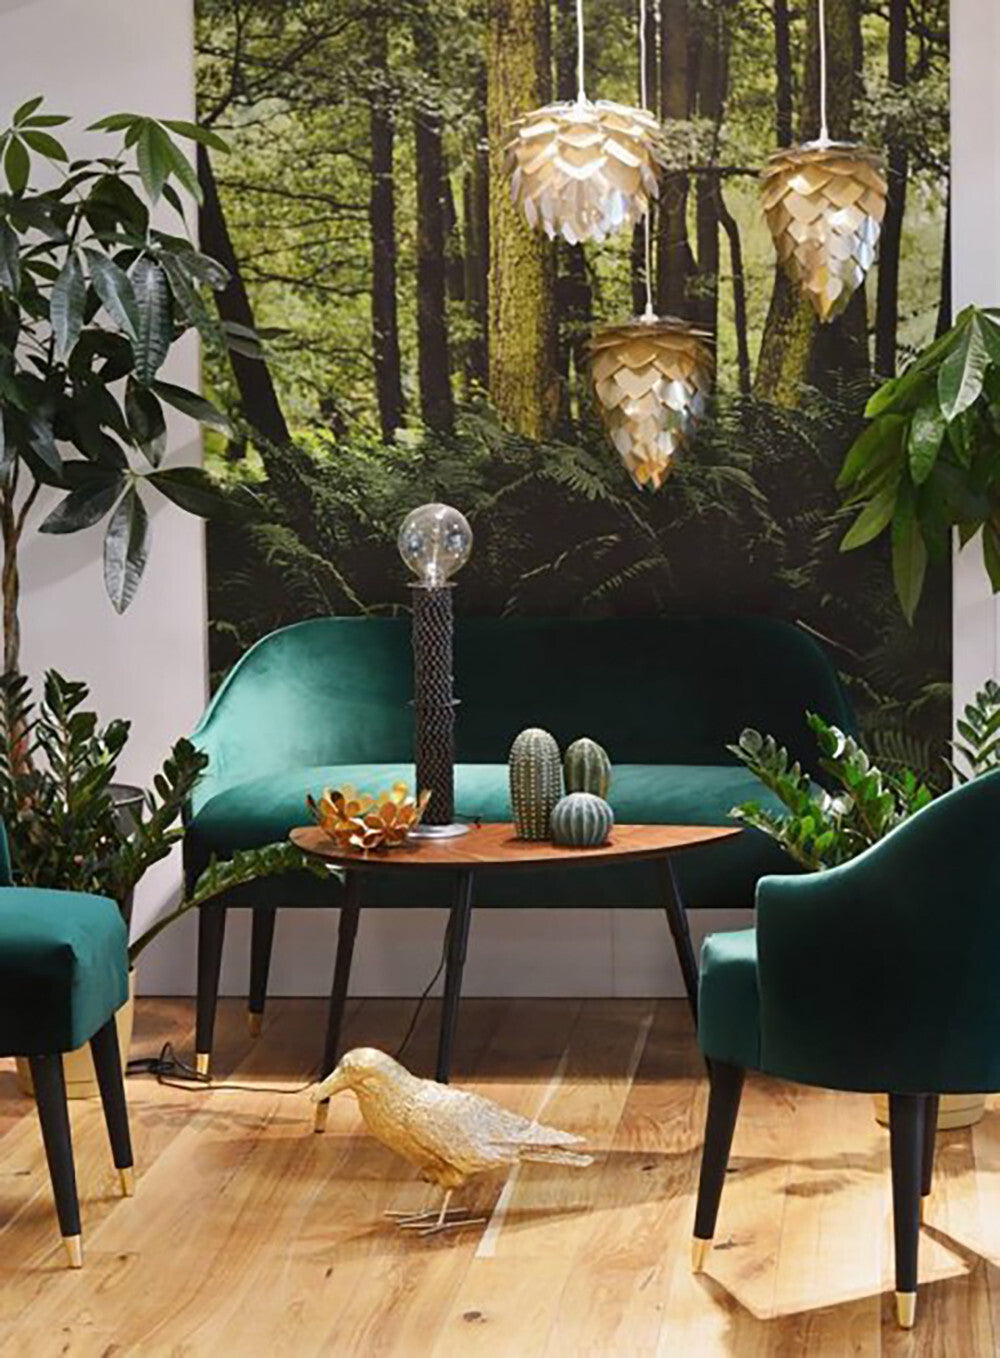 Sofa EMI VELVET green, Happy Barok, Eye on Design